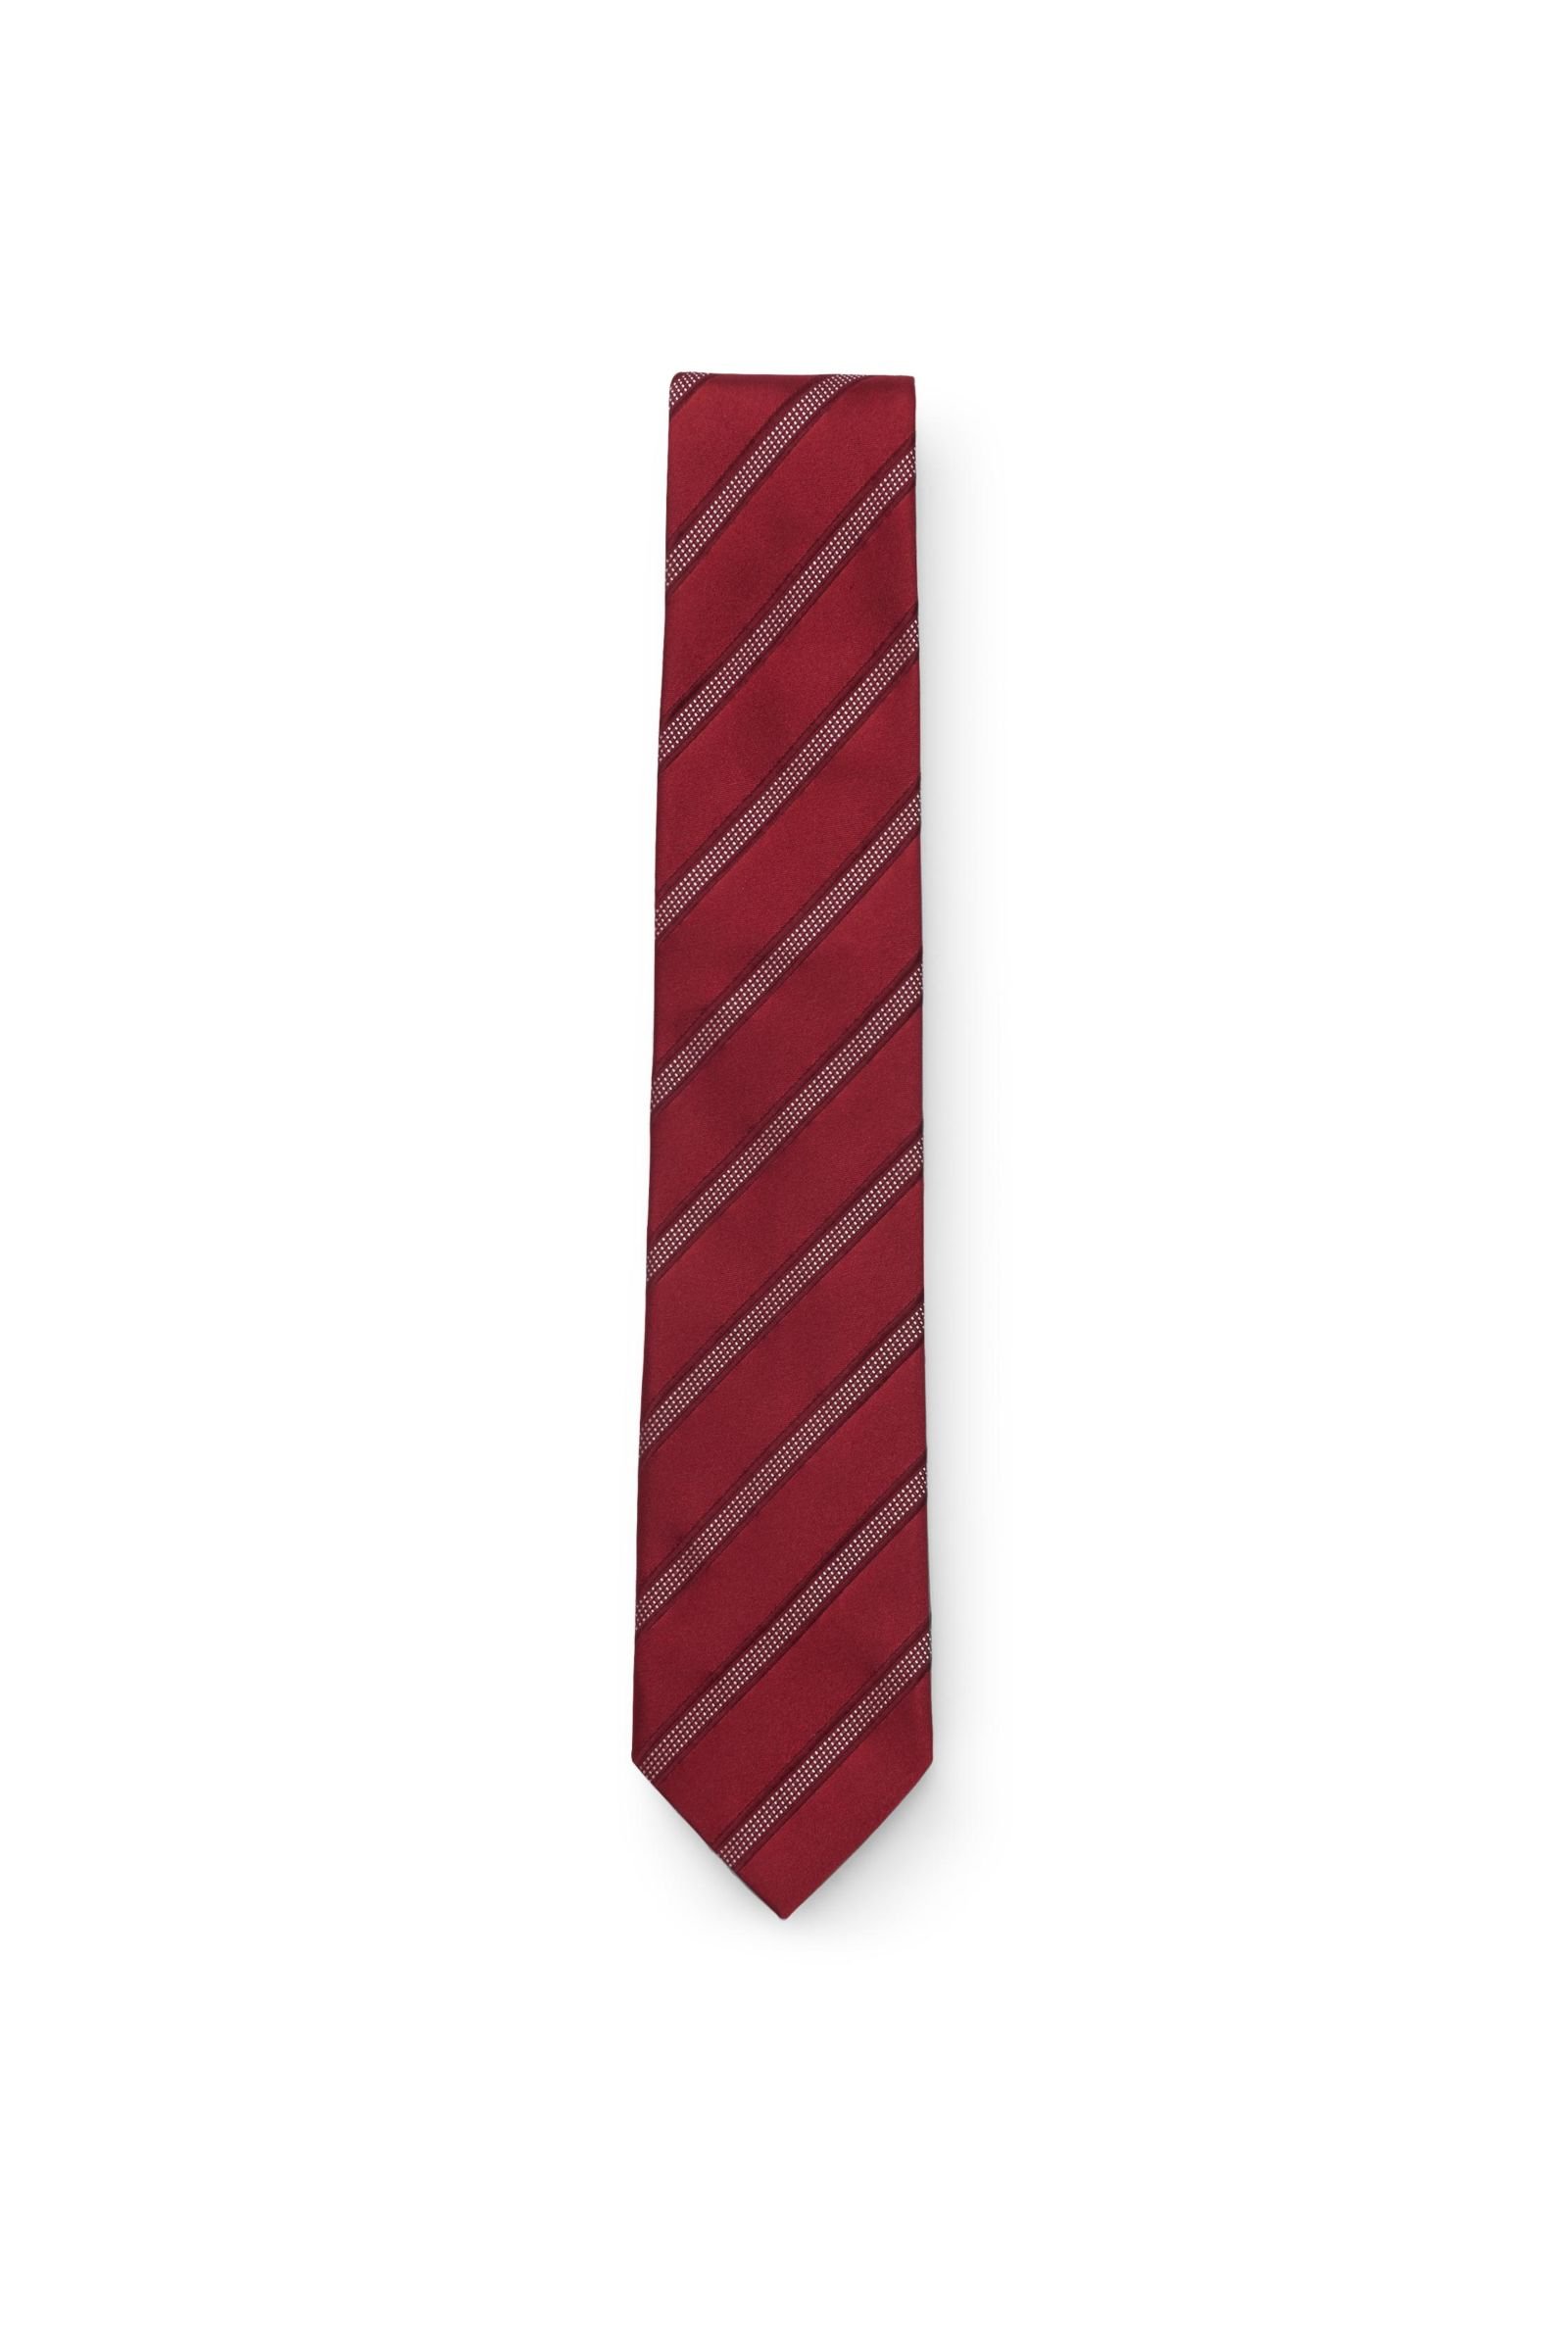 Silk tie dark red striped